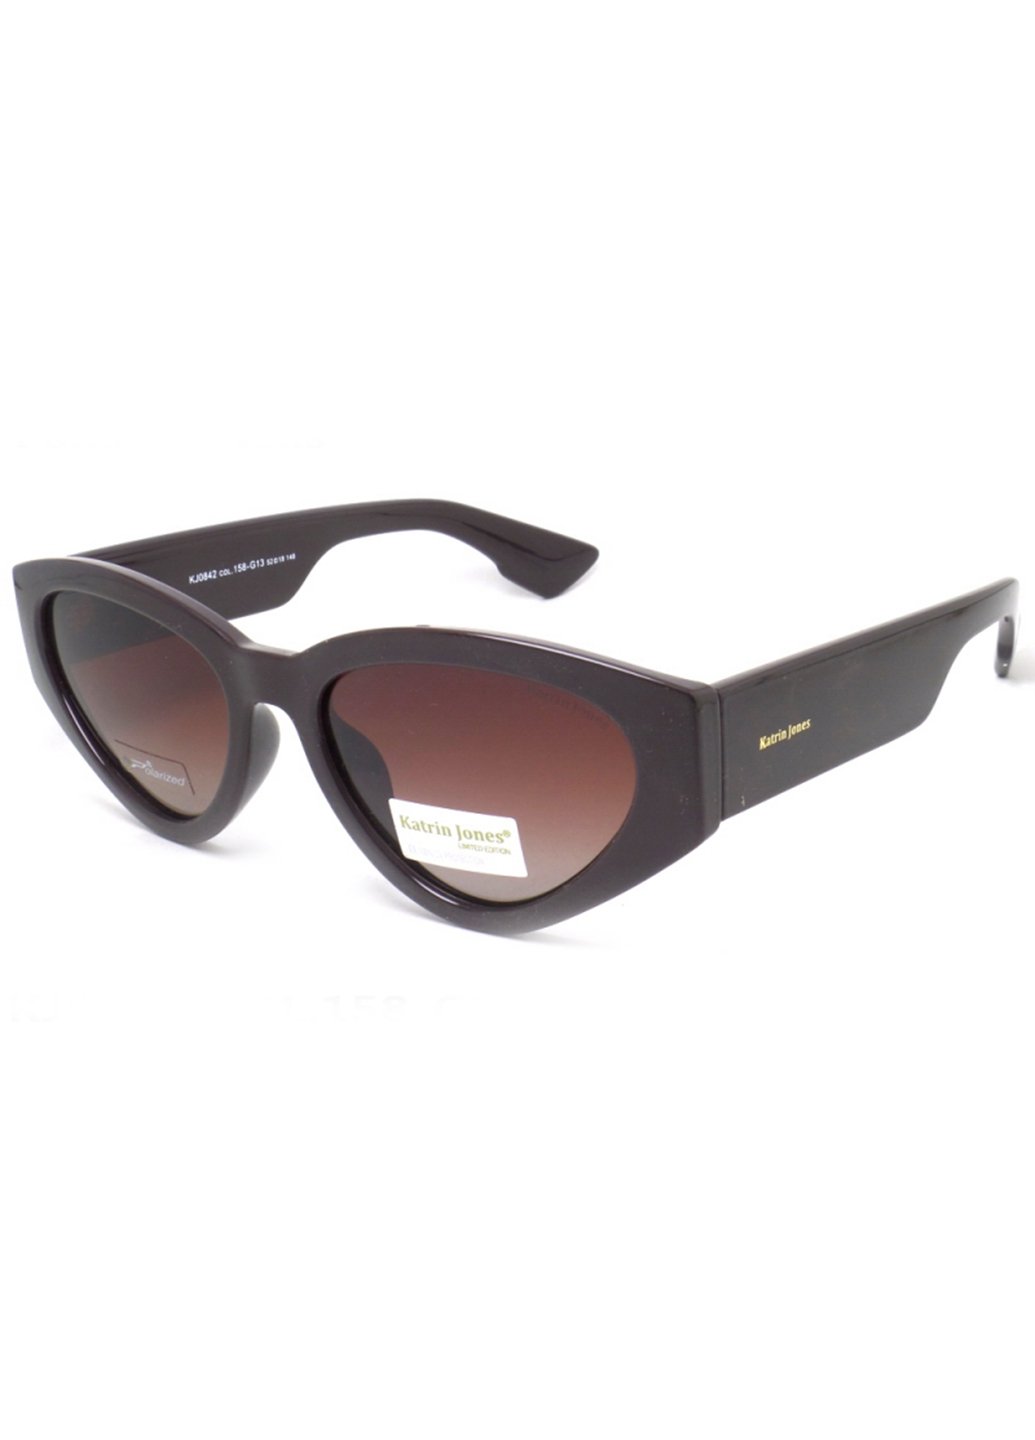 Купить Женские солнцезащитные очки Katrin Jones с поляризацией KJ0842 180021 - Коричневый в интернет-магазине